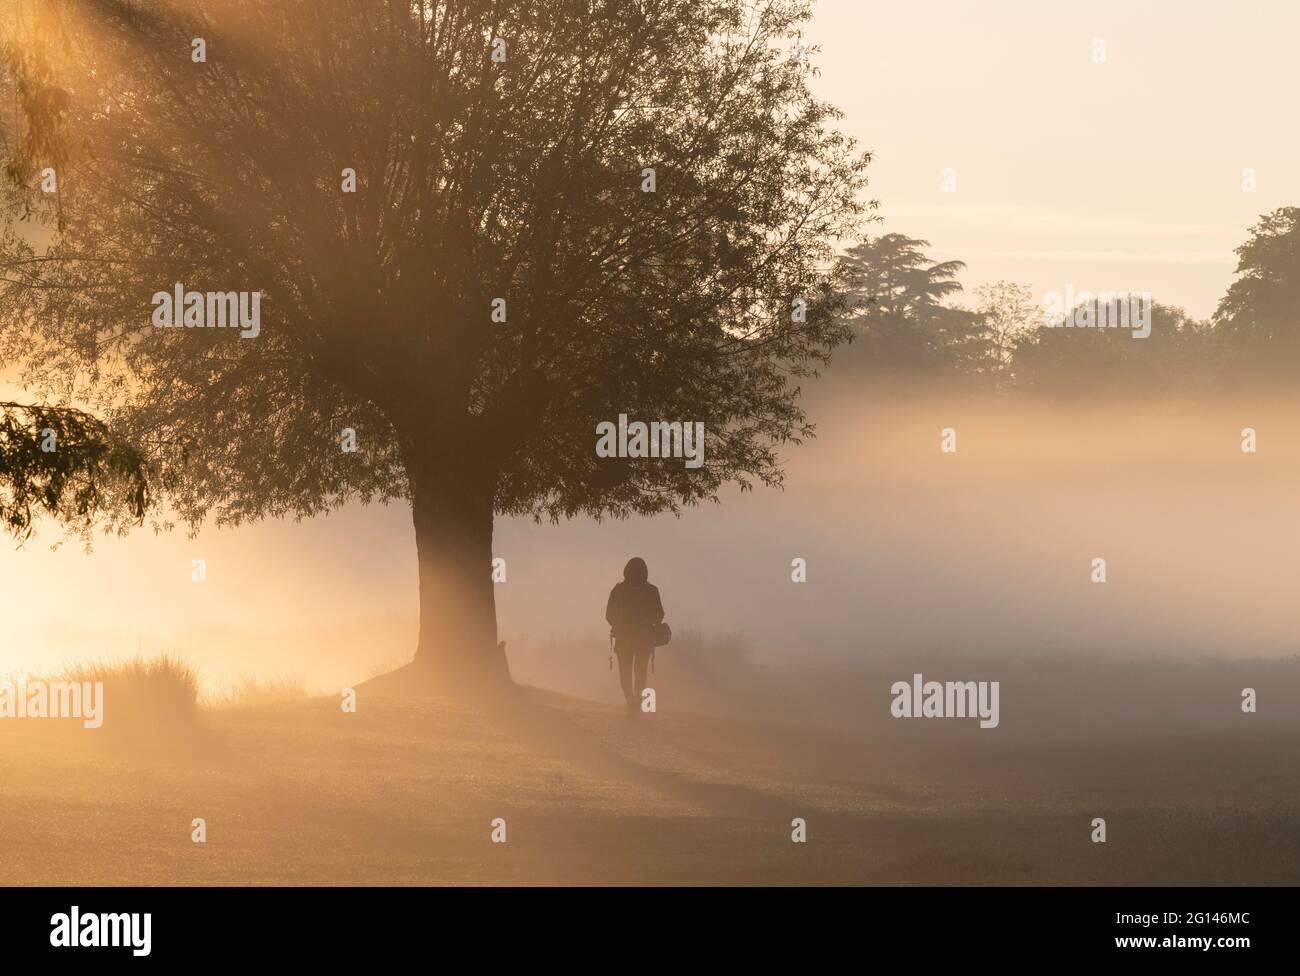 Sonnenaufgang erzeugt eine Silhouette einer Person, die im frühen Morgennebel an einem Baum vorbei geht Stockfoto